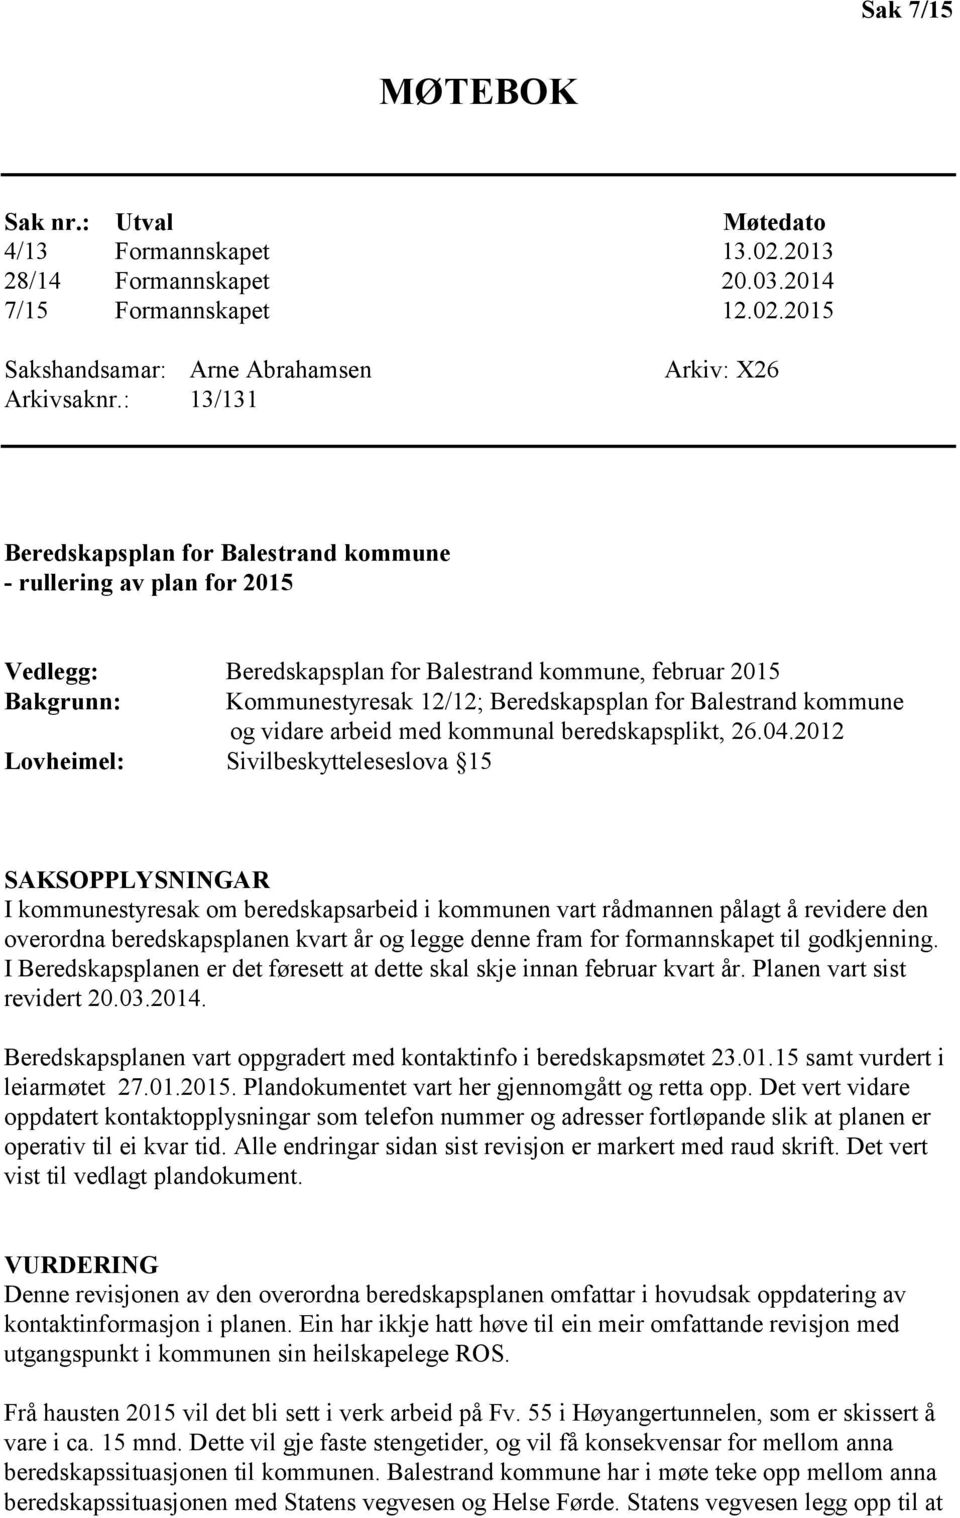 Balestrand kommune og vidare arbeid med kommunal beredskapsplikt, 26.04.